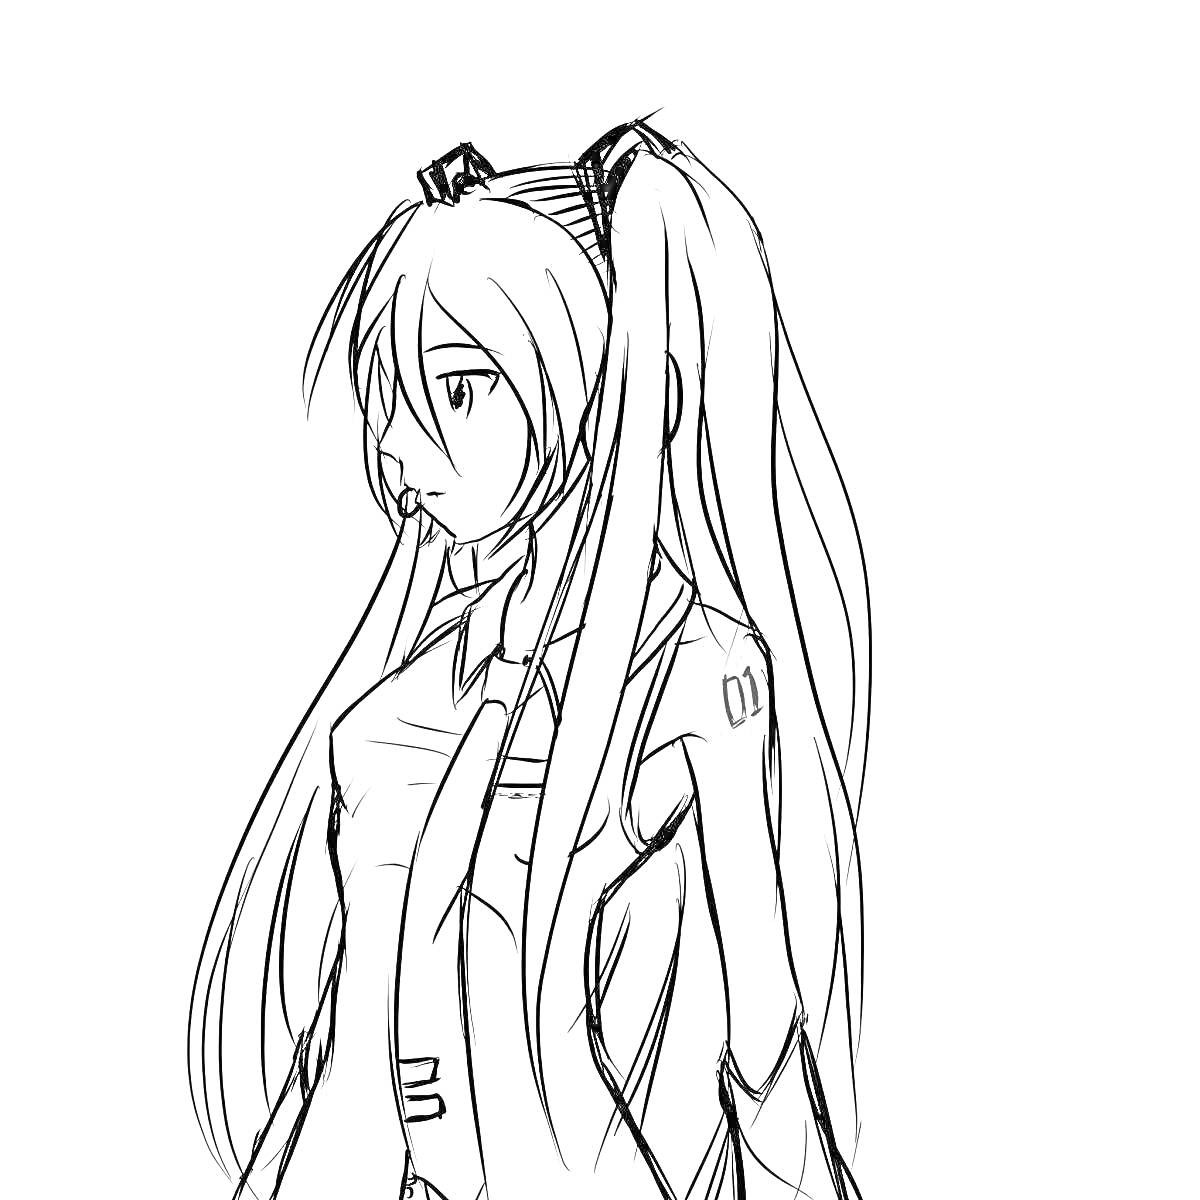 Раскраска Хацунэ Мику с длинными волосами, в профиль, в школьной форме с галстуком